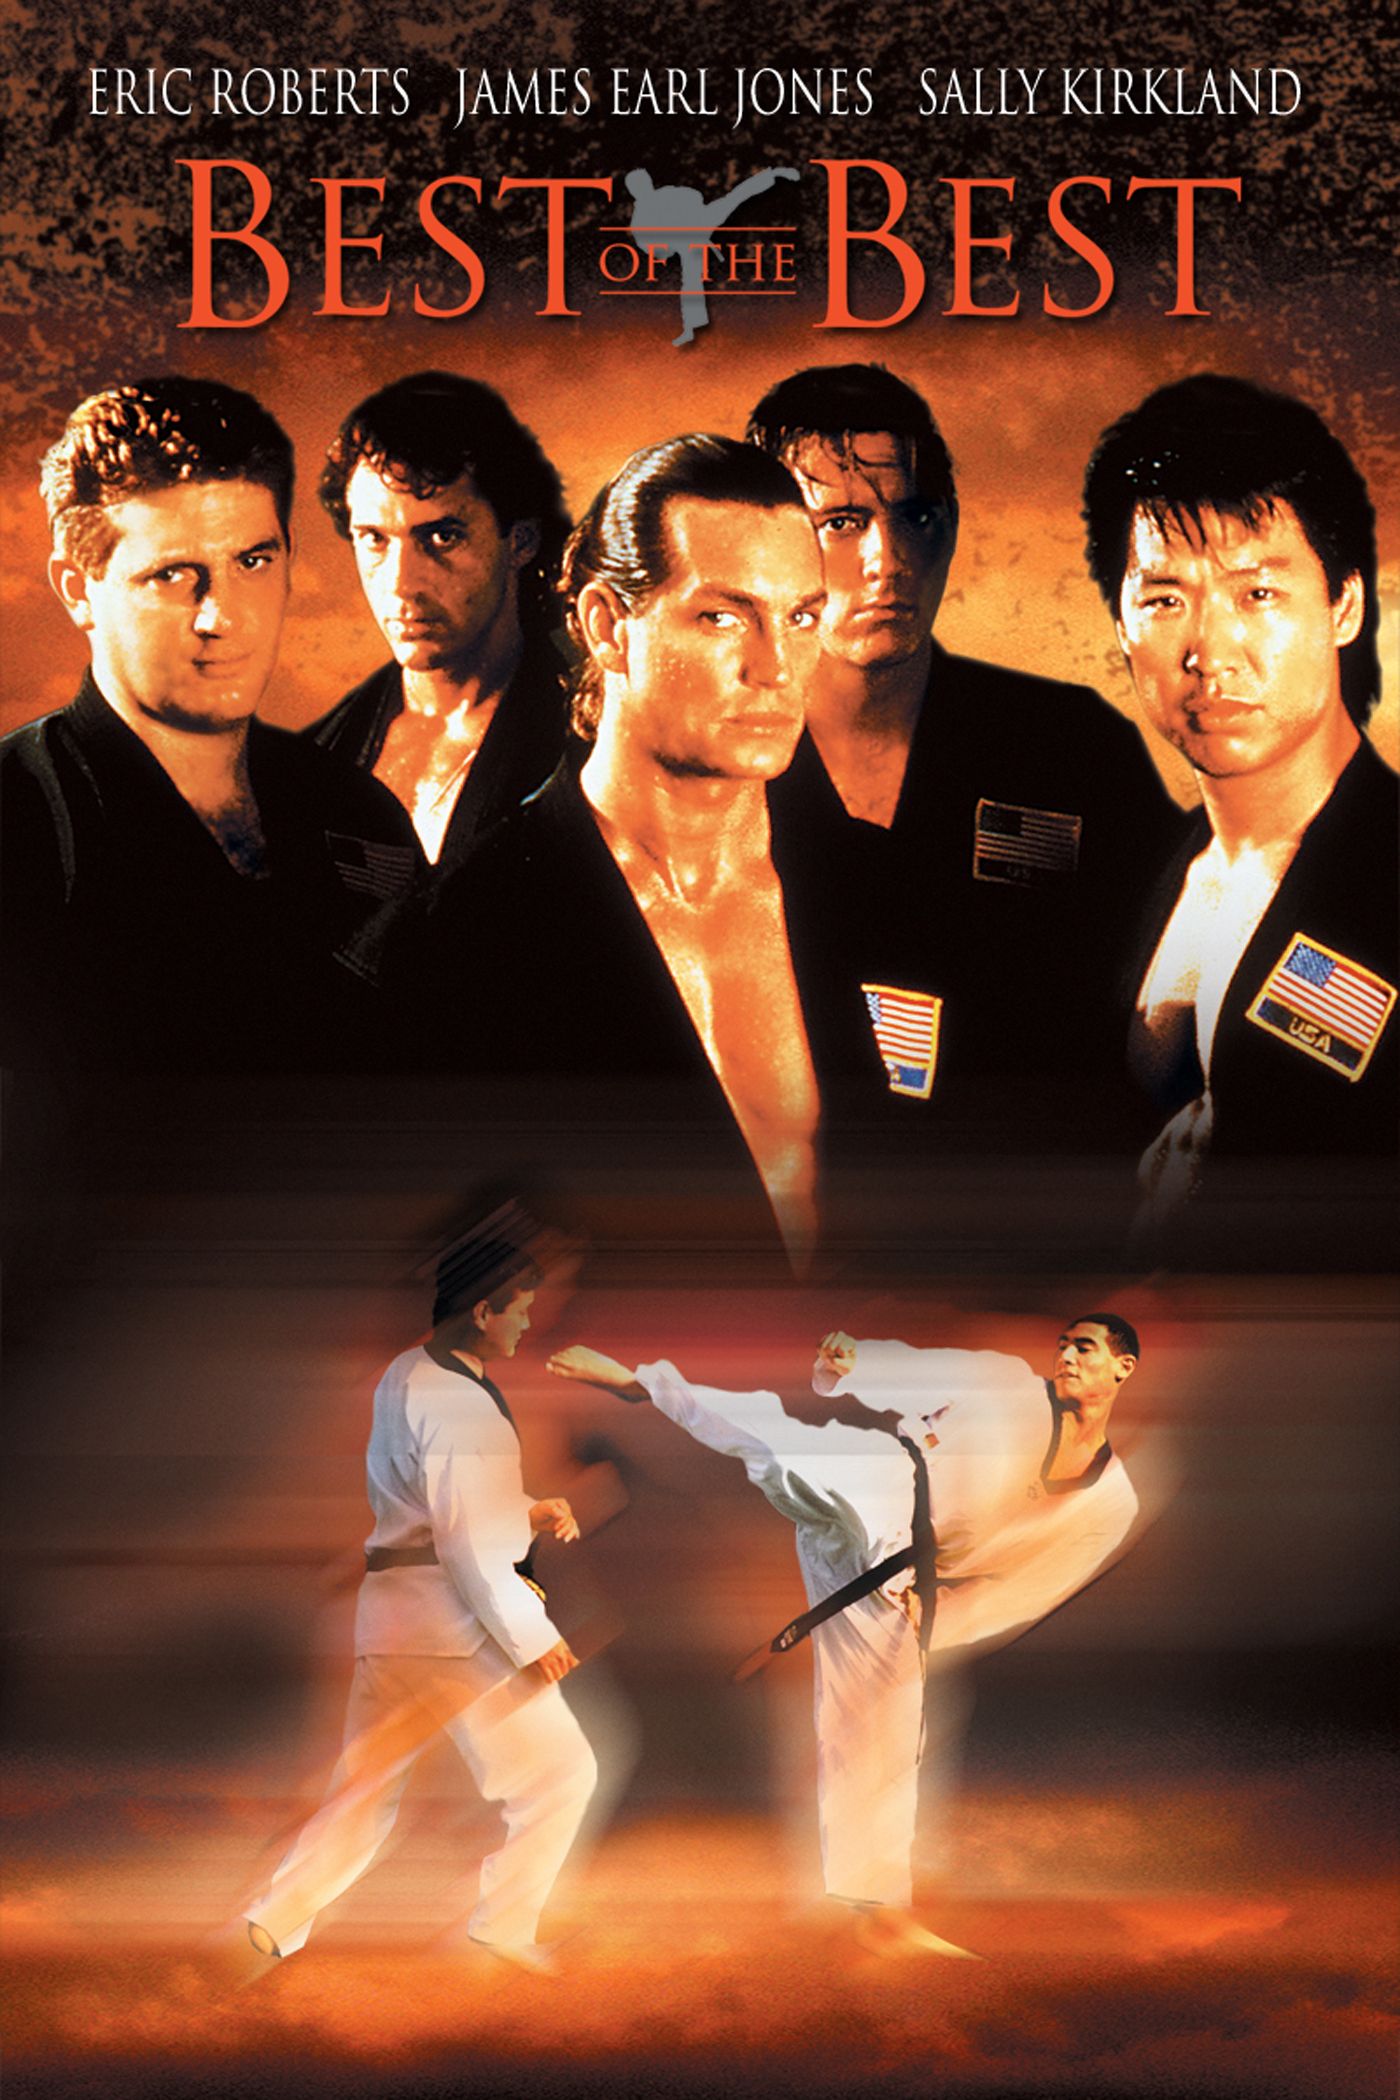 the karate kid 1984 full movie online free